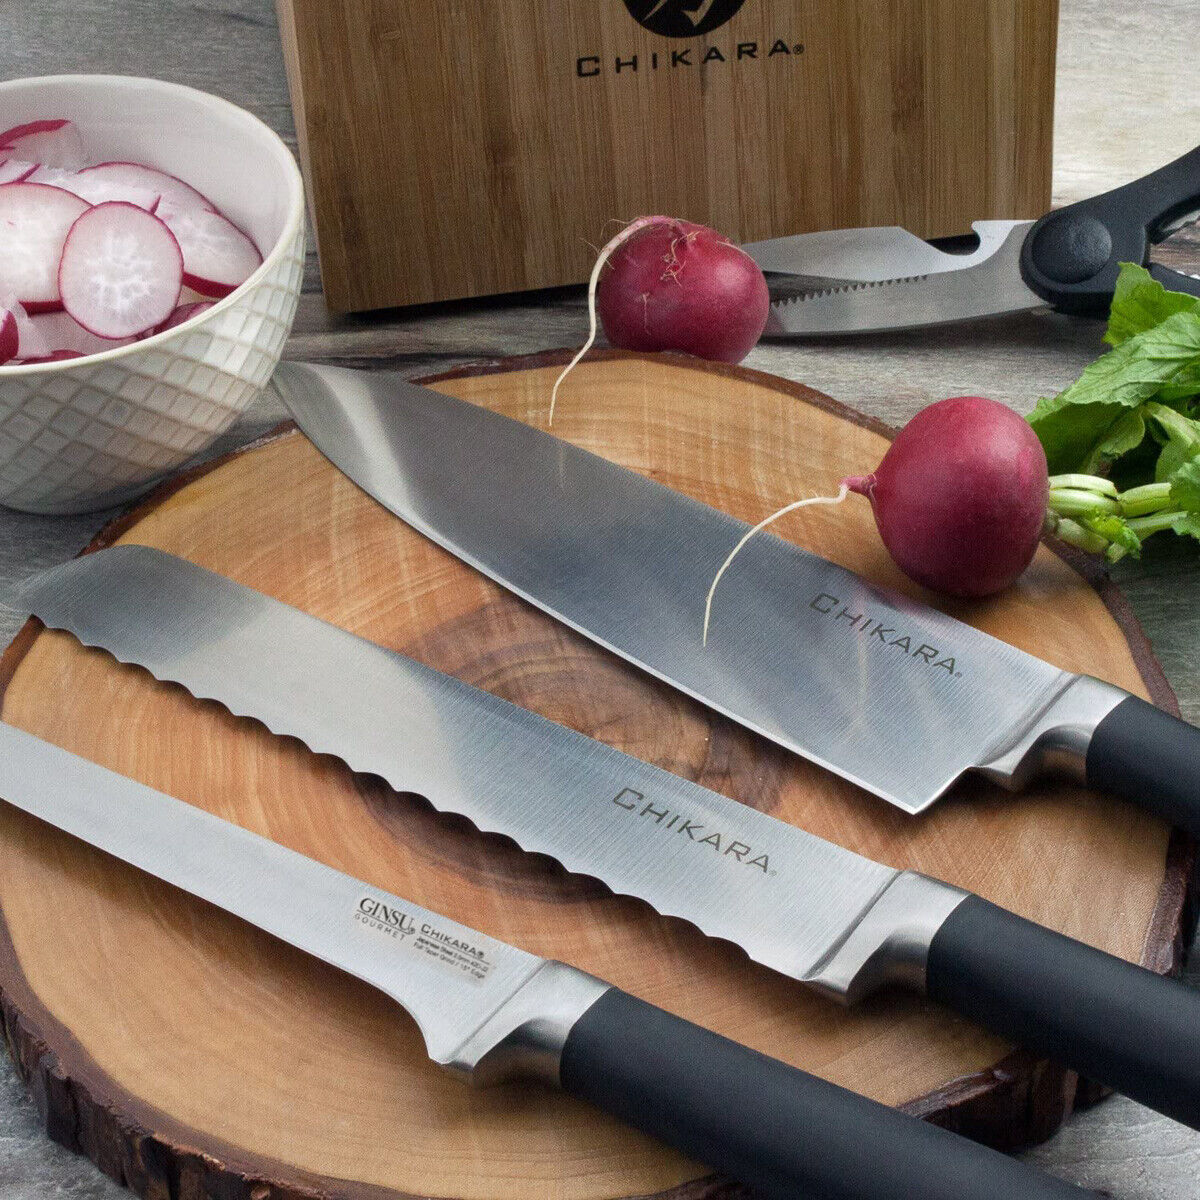 Ginsu Chikara Series 6” Boning Knife Japanese 420J2 Stainless Steel Kitchen Tool